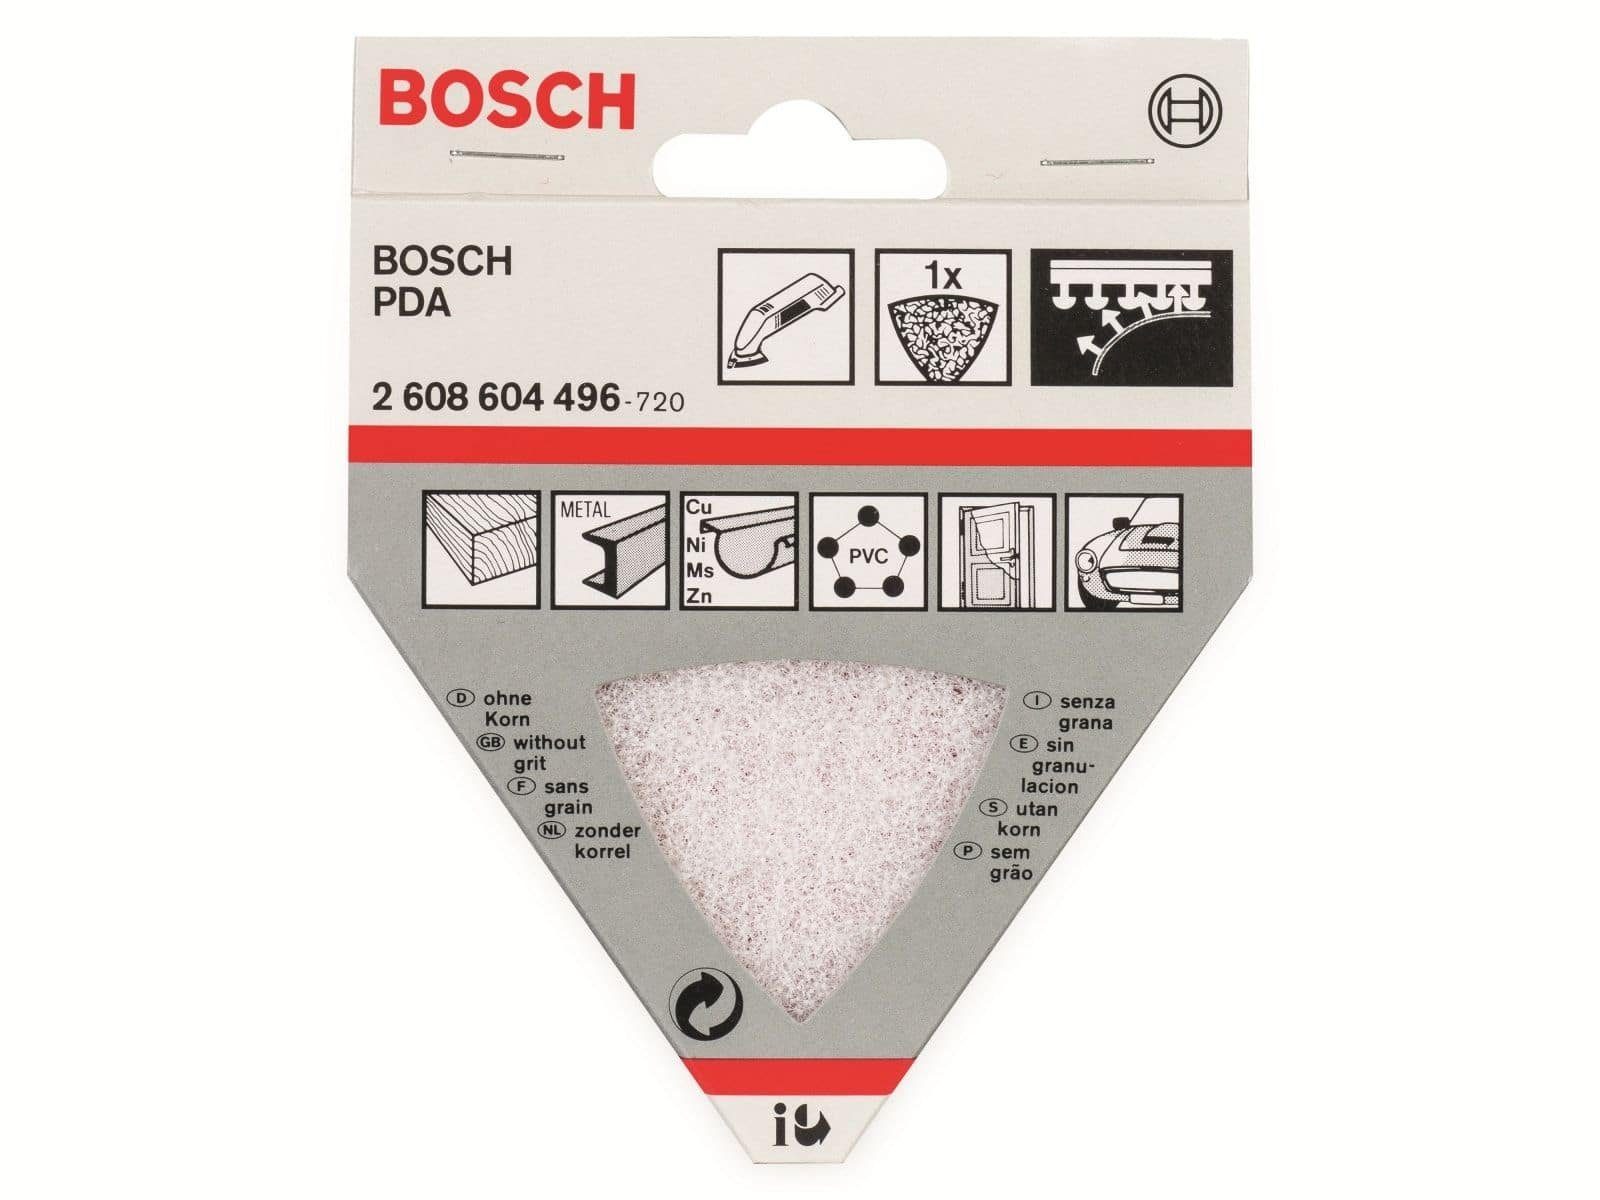 Bosch Accessories BOSCH Allesschneider Reinigungsvlies BOSCH für Dreieckschleifer